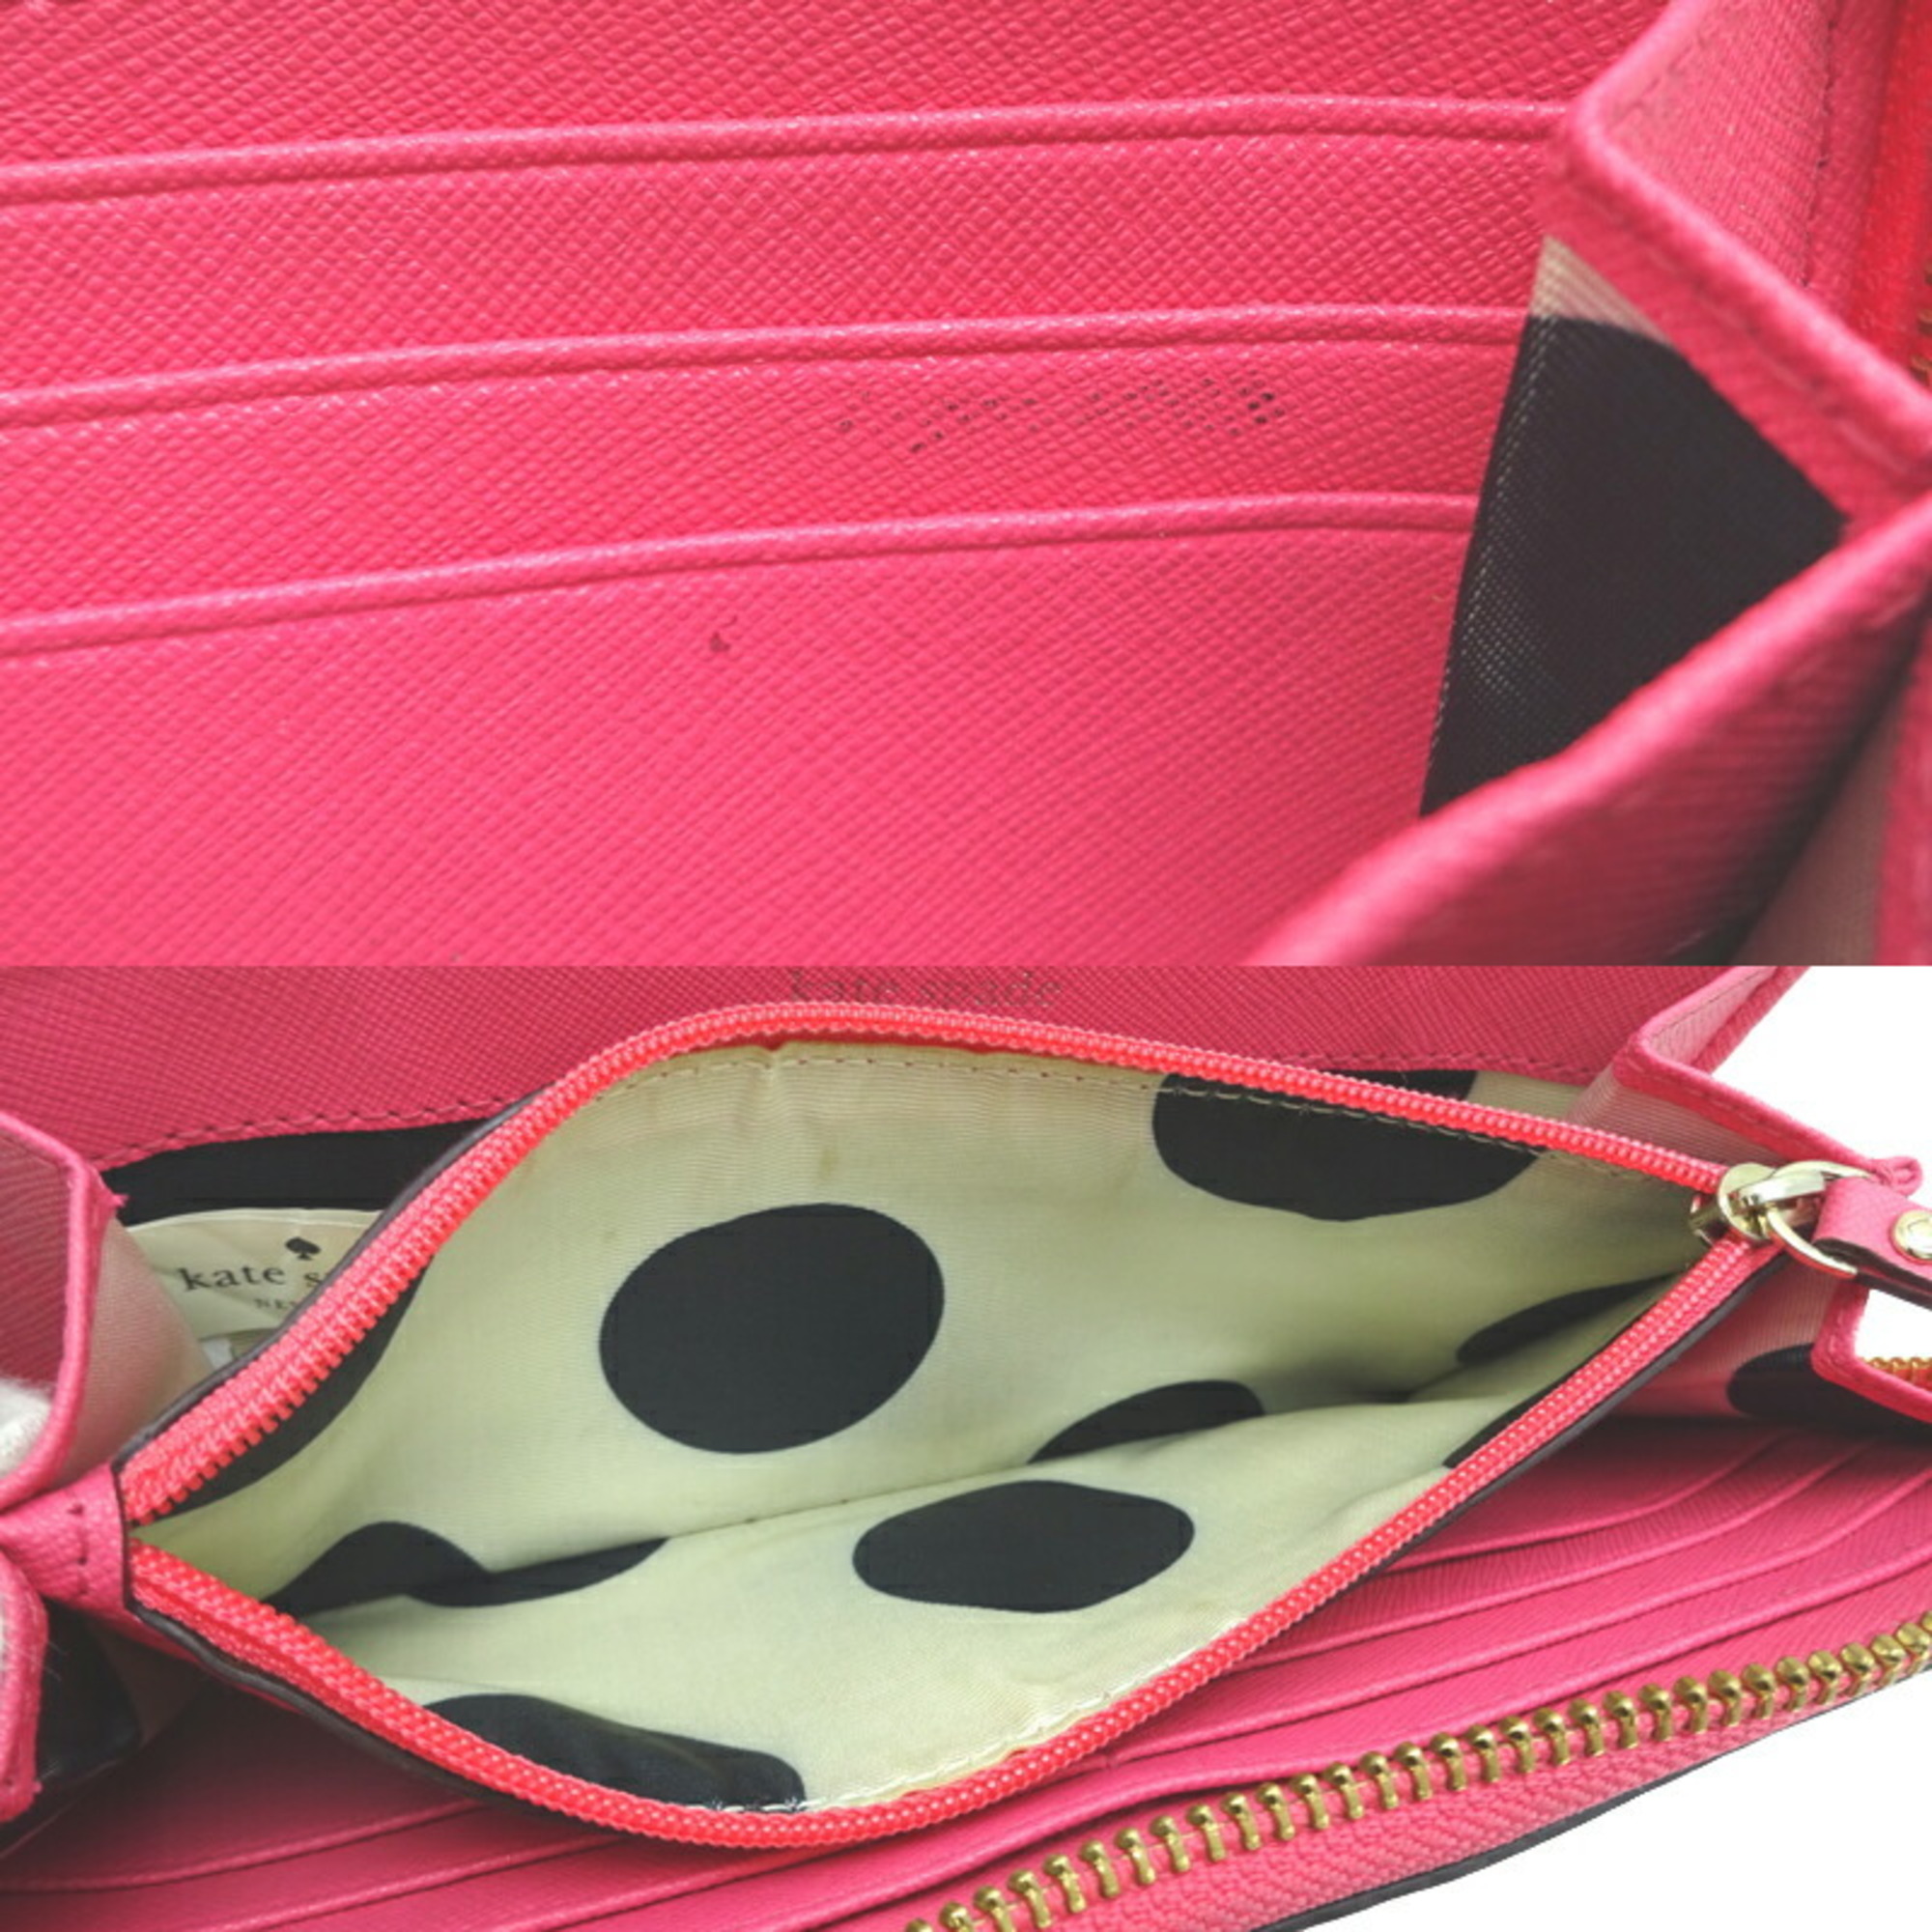 Kate Spade Round Long Wallet Ladies PWRU3898 Leather Pink